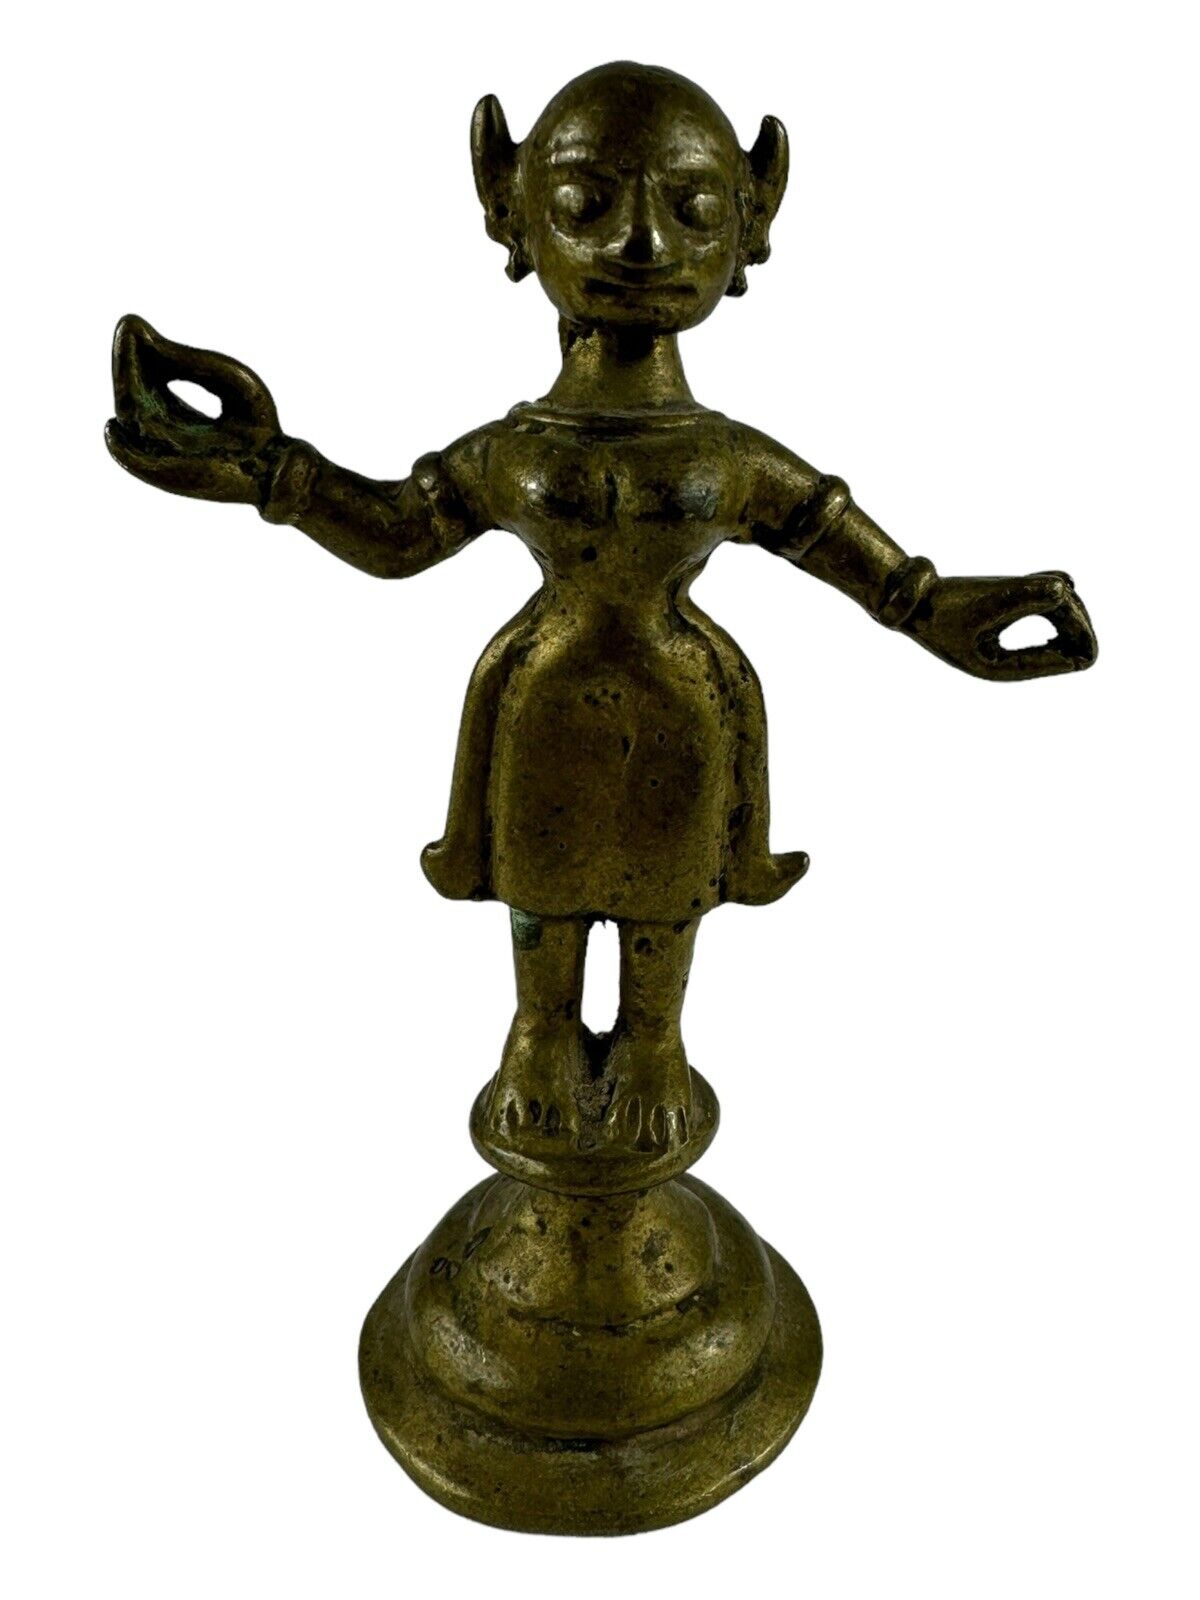 Brass Statue Goddess Radha Vintage Art Figurine Sculpture 4 1/2 Inches